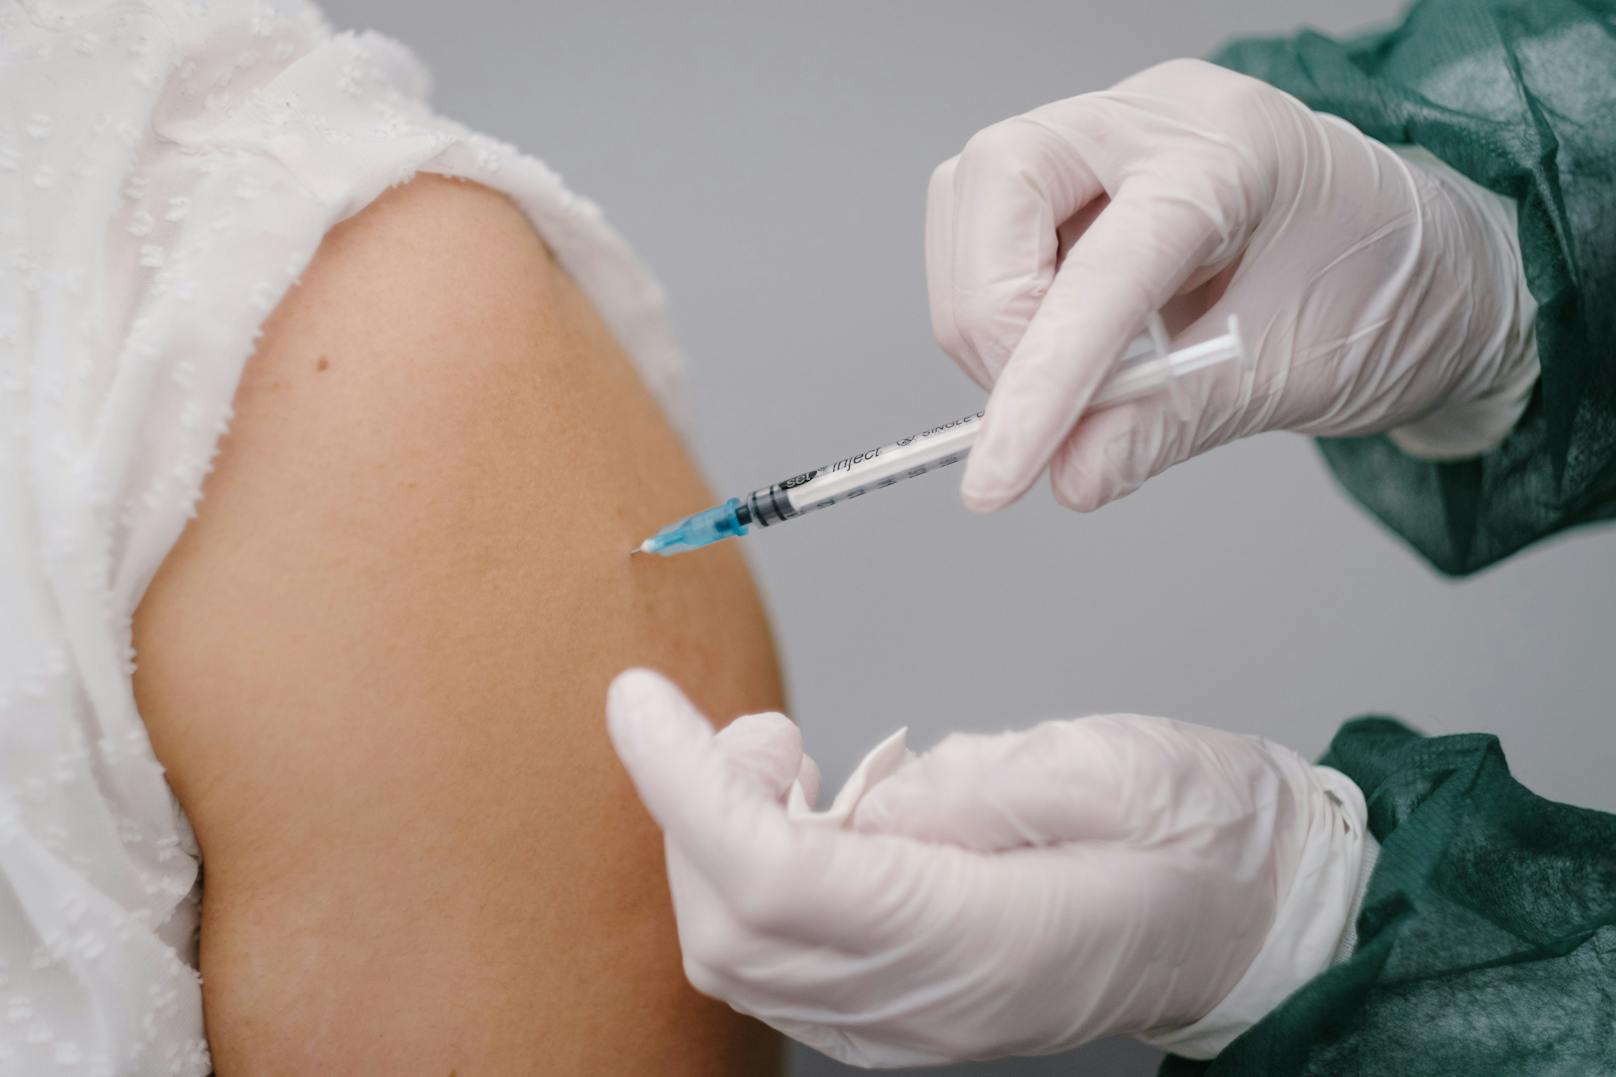 Impfung bekommt der Insasse vorerst nicht